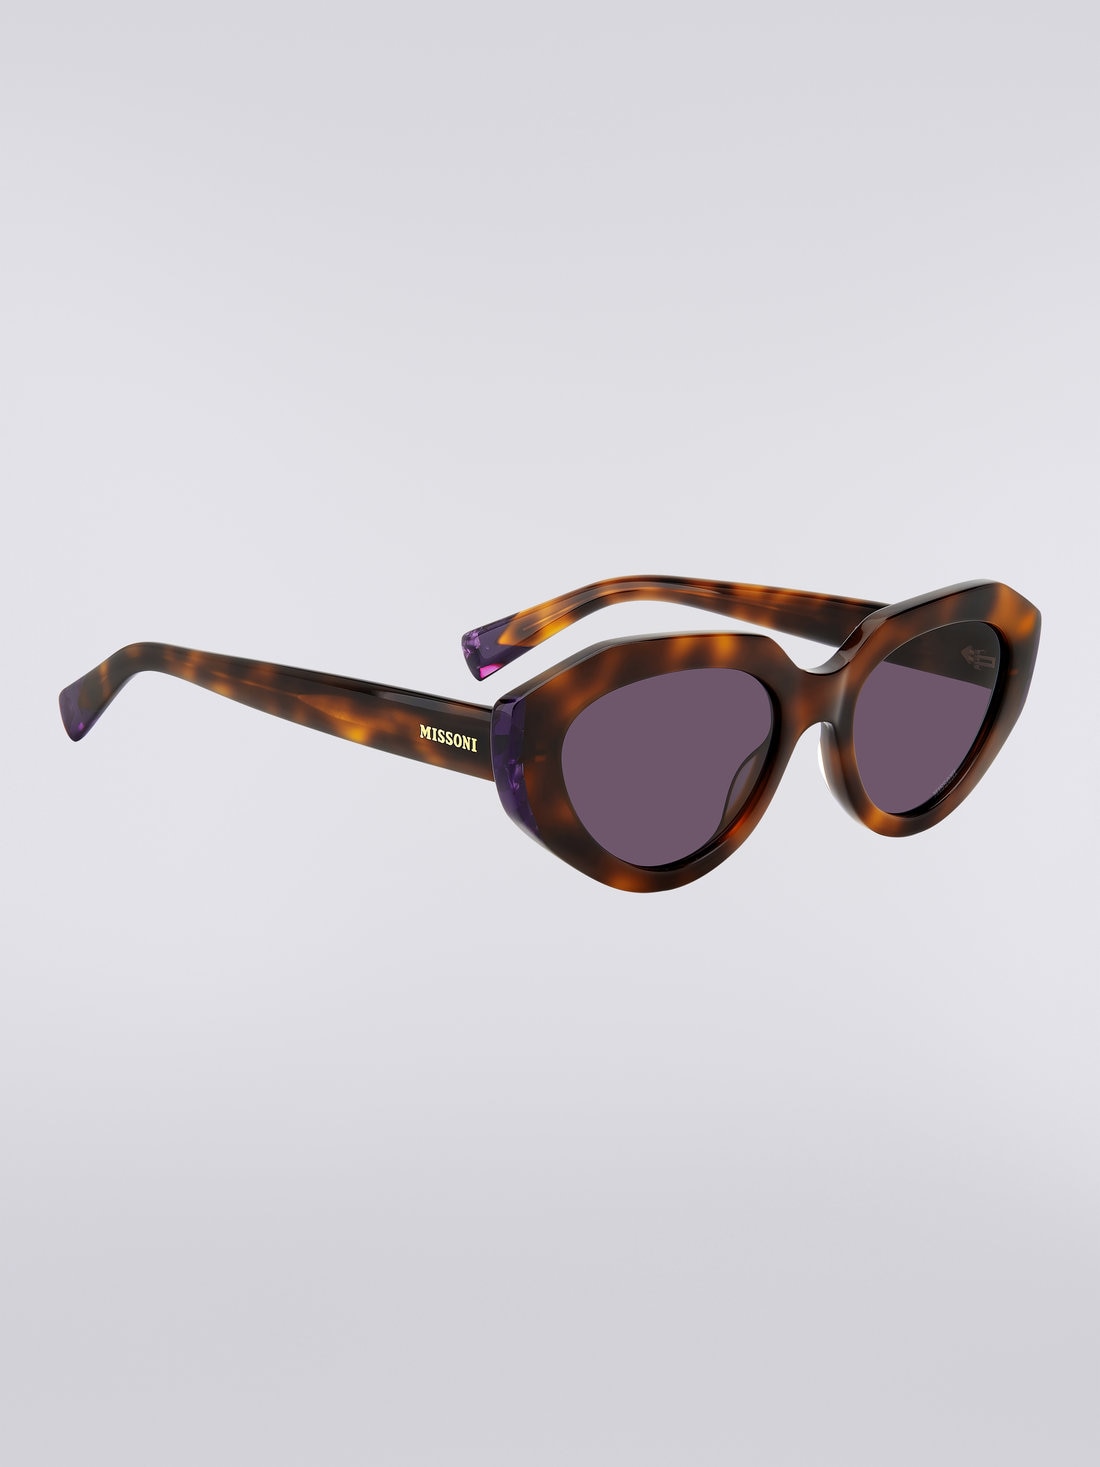 Missoni Seasonal Acetate Sunglasses, Multicoloured  - 8051575840173 - 2